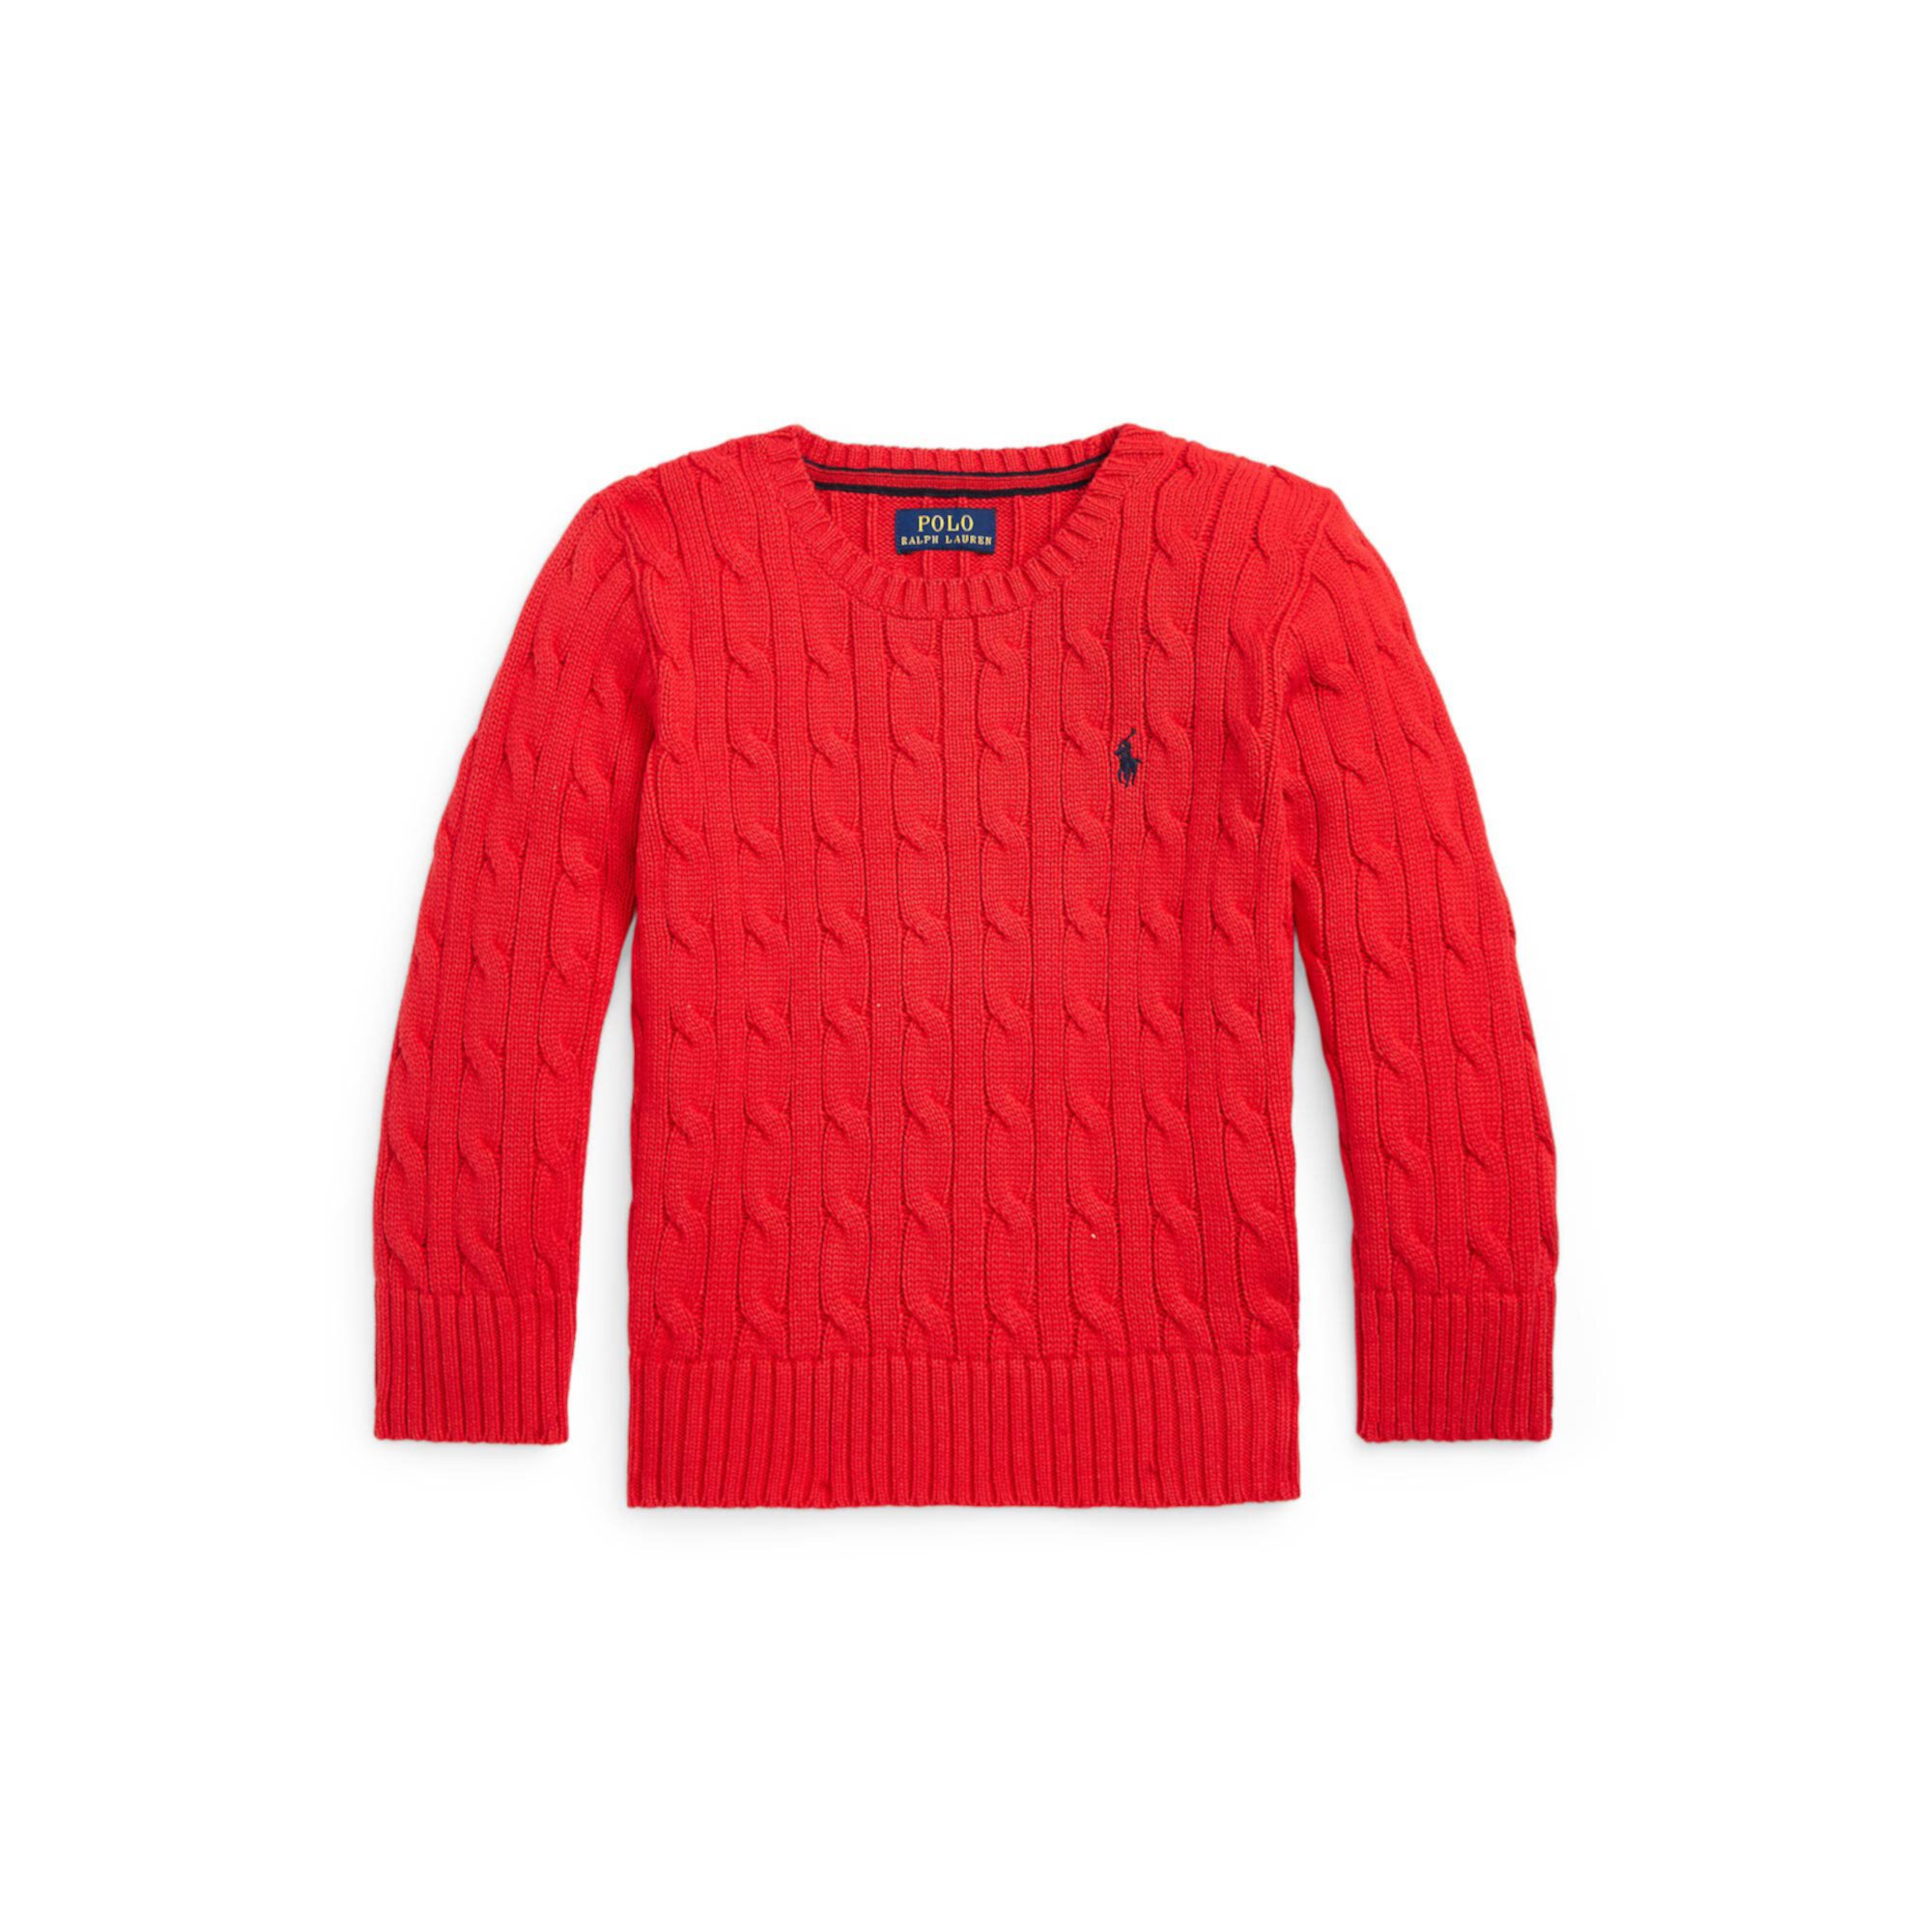 Хлопковый свитер косой вязки (для маленьких детей) Polo Ralph Lauren